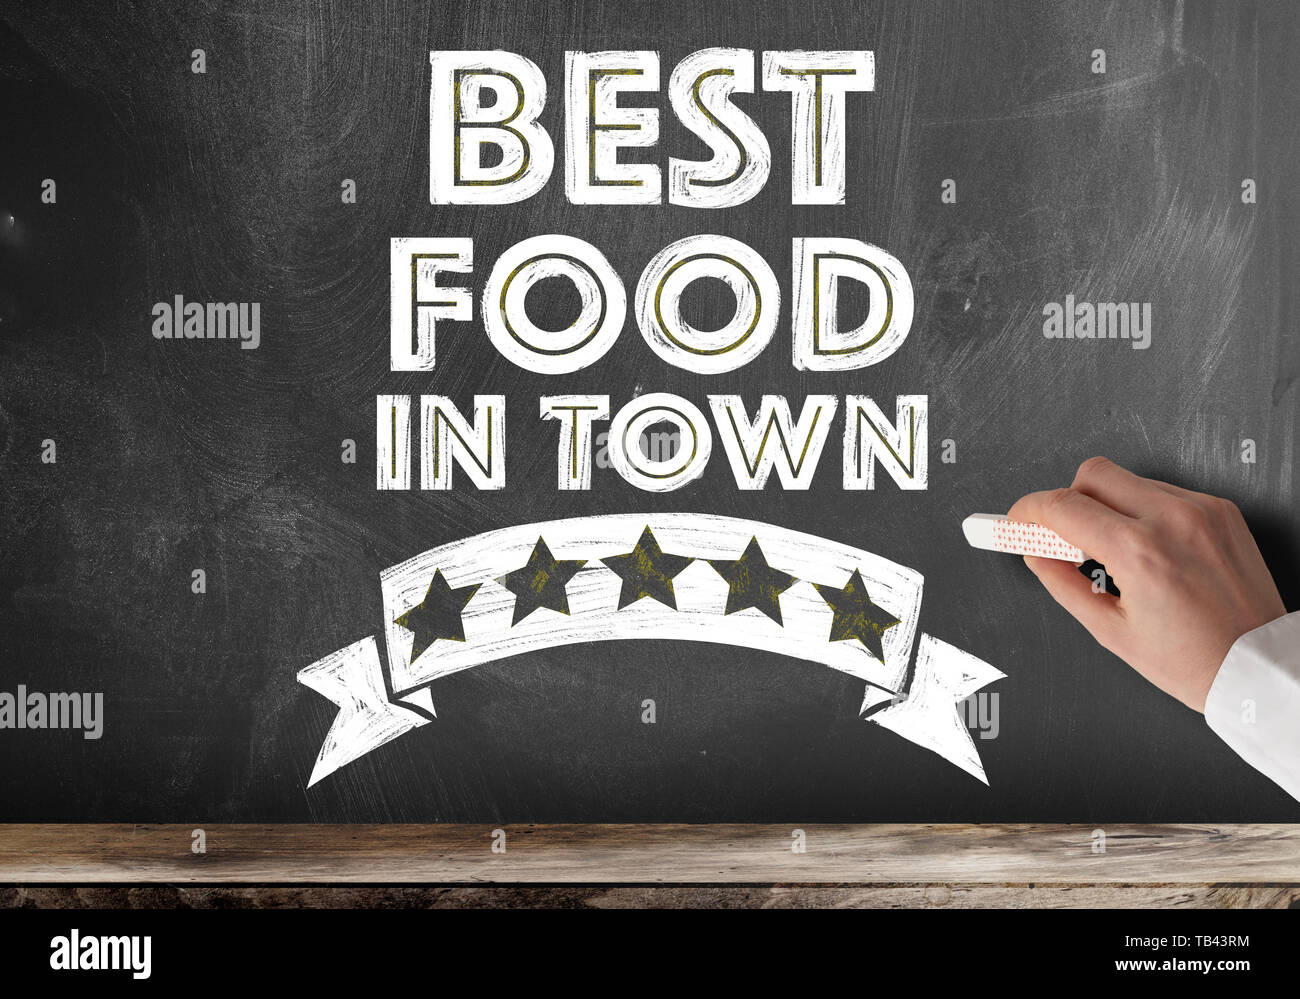 text BEST FOOD IN TOWN written on chalkboard Stock Photo